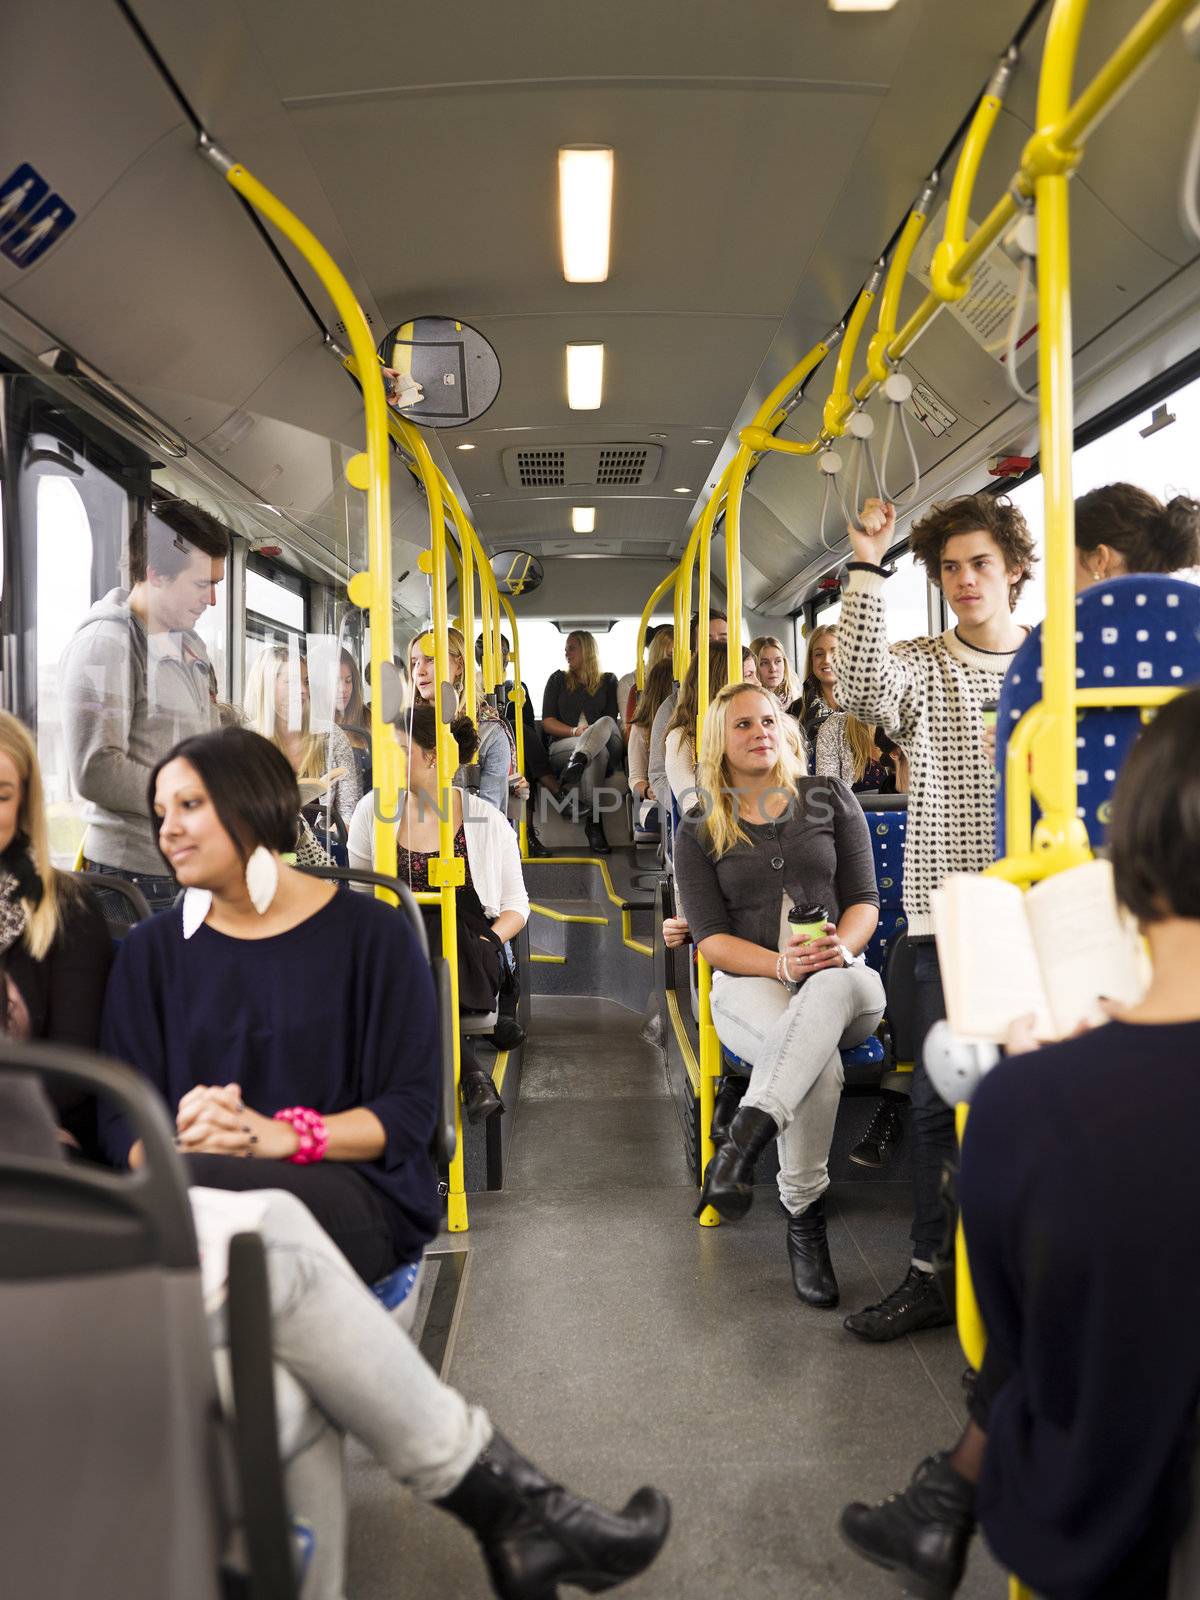 People in a bus by gemenacom